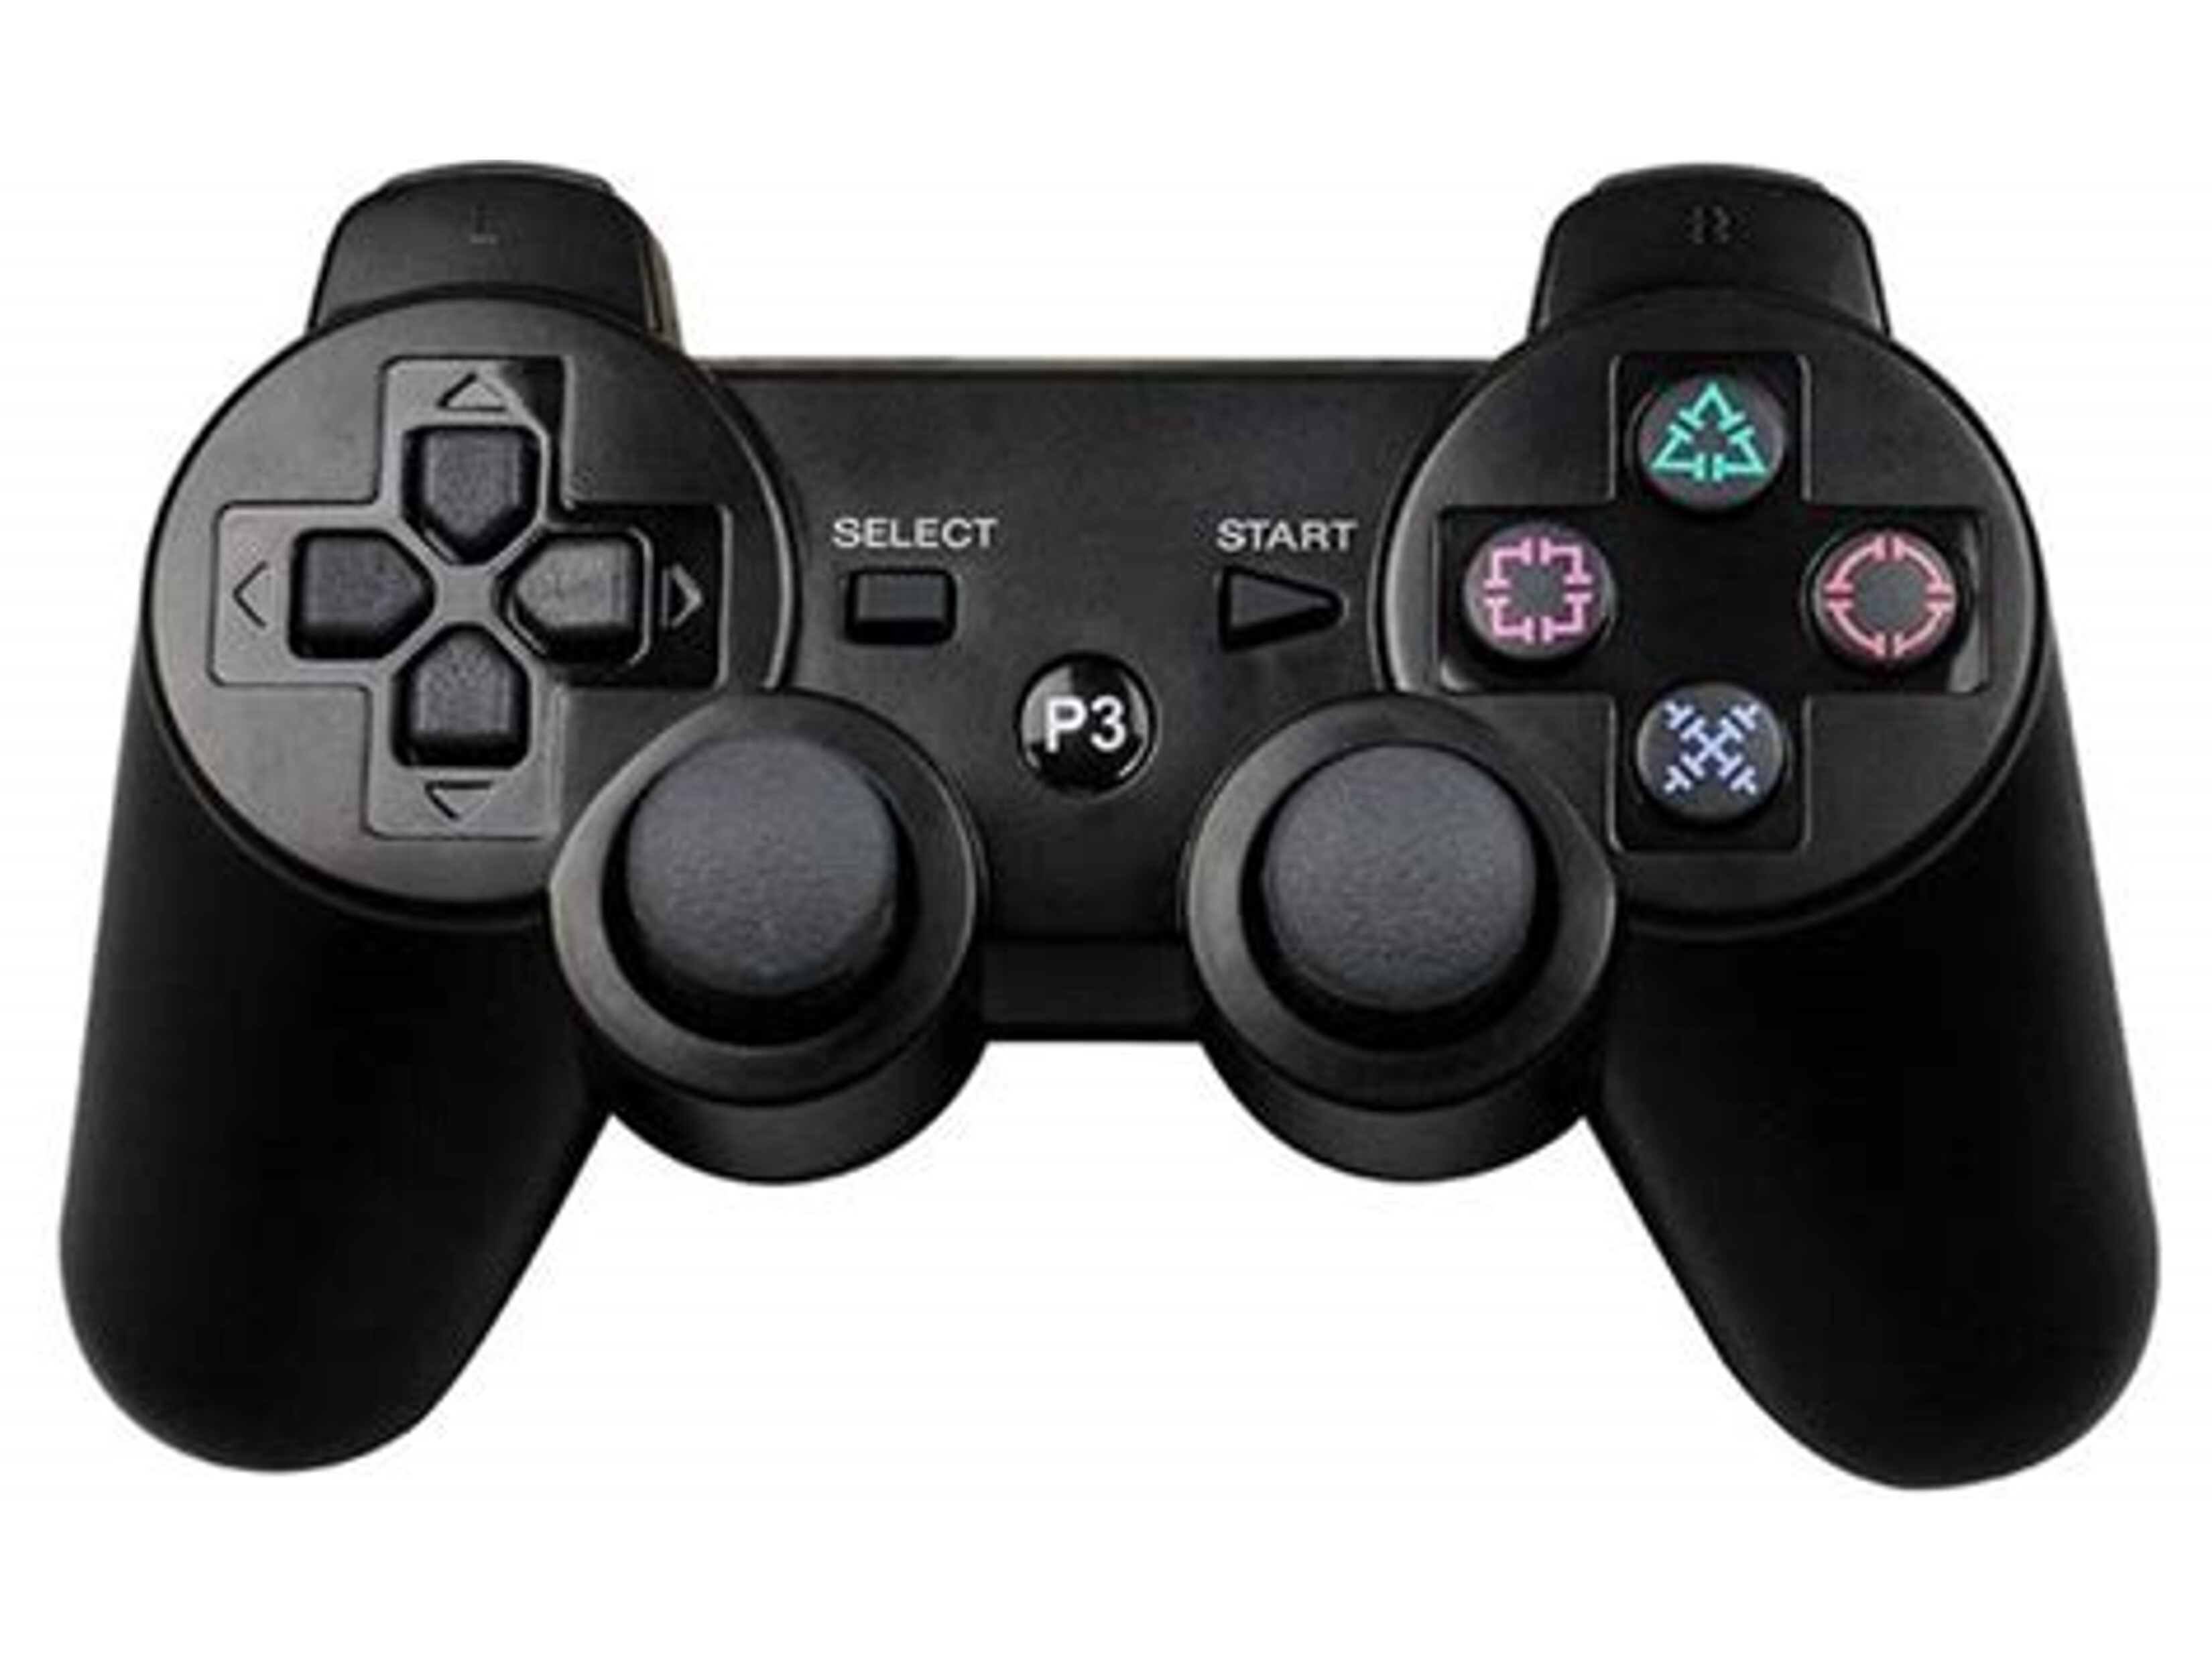 Nieuwe Wireless Dual Shock Controller voor Playstation 3 - Zwart Kopen | Playstation 3 Hardware